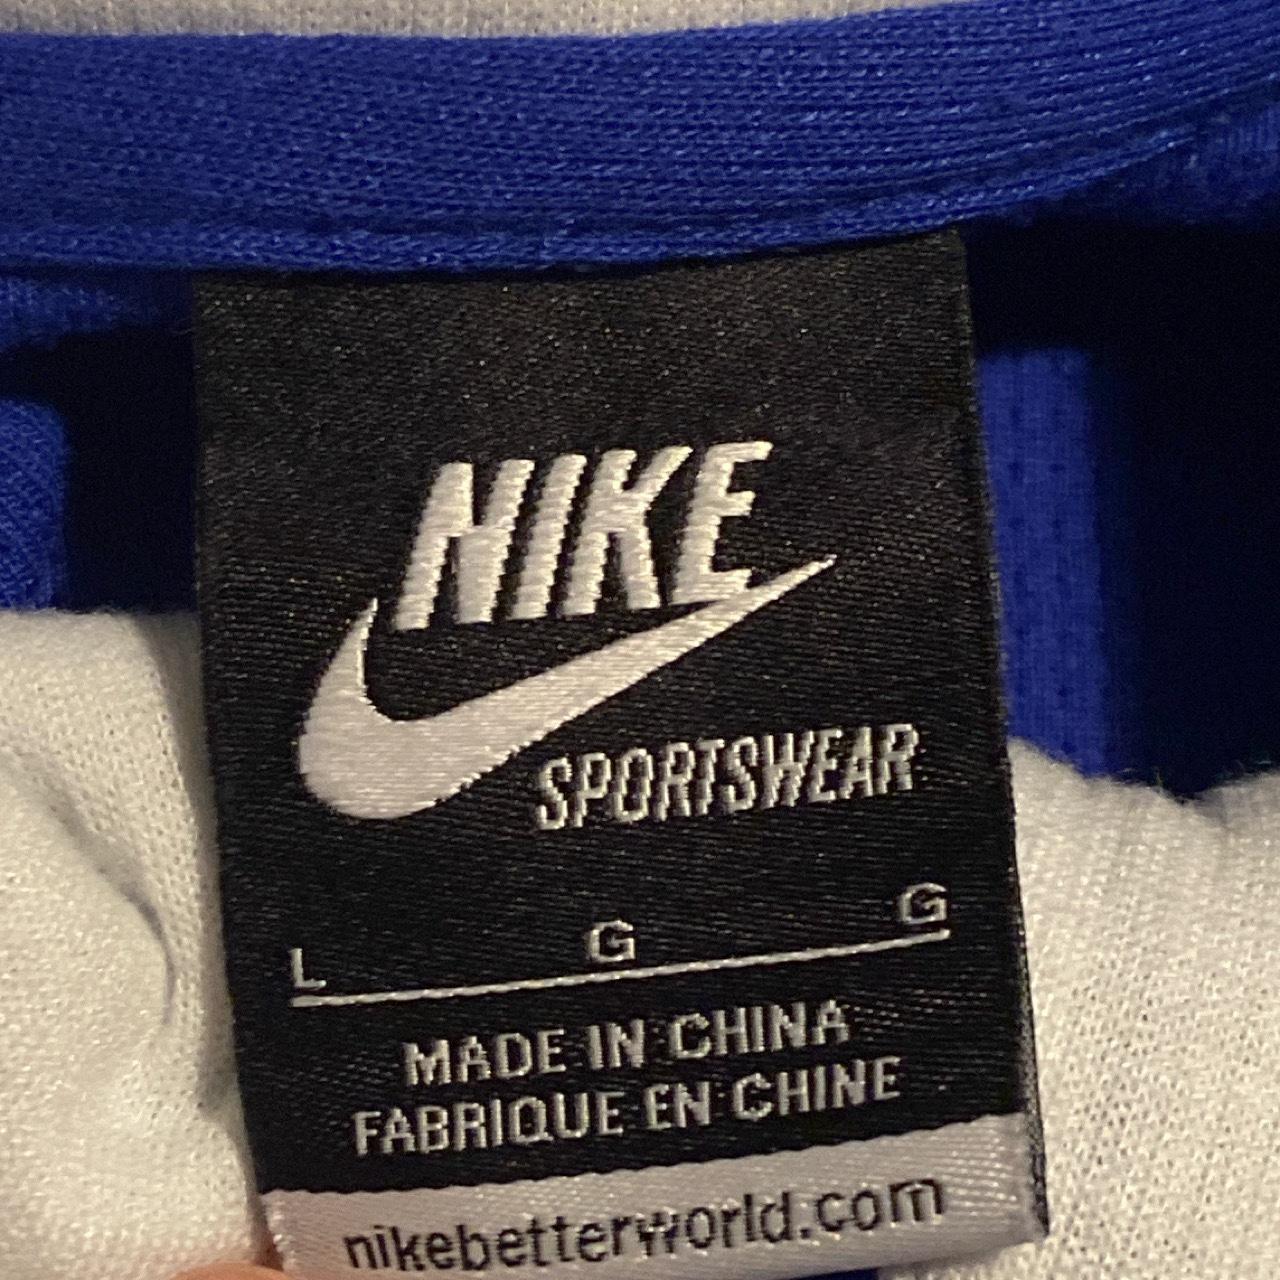 Nike futbol blue zip up This blokecore nike zip up... - Depop